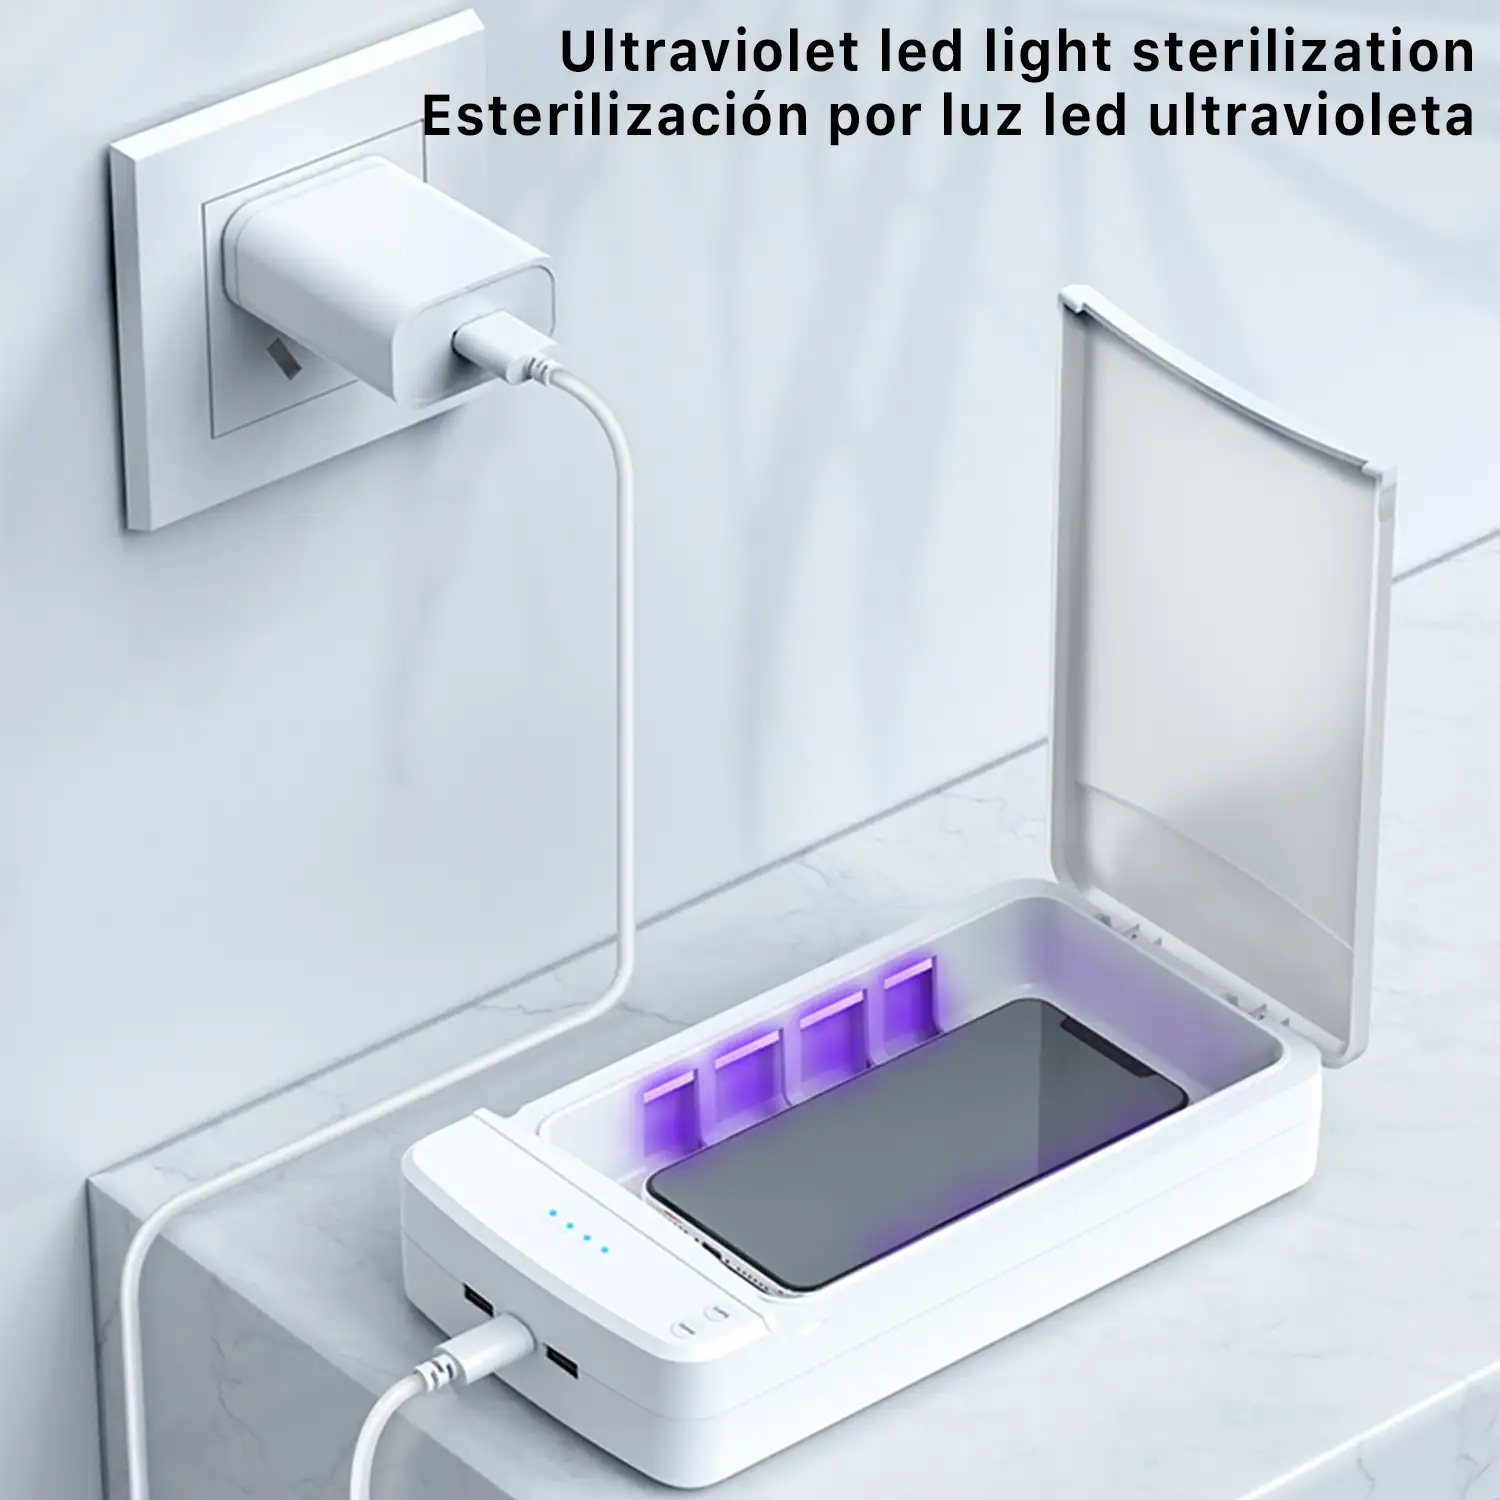 Caja esterilizadora con luz ultravioleta y función aromaterapia.